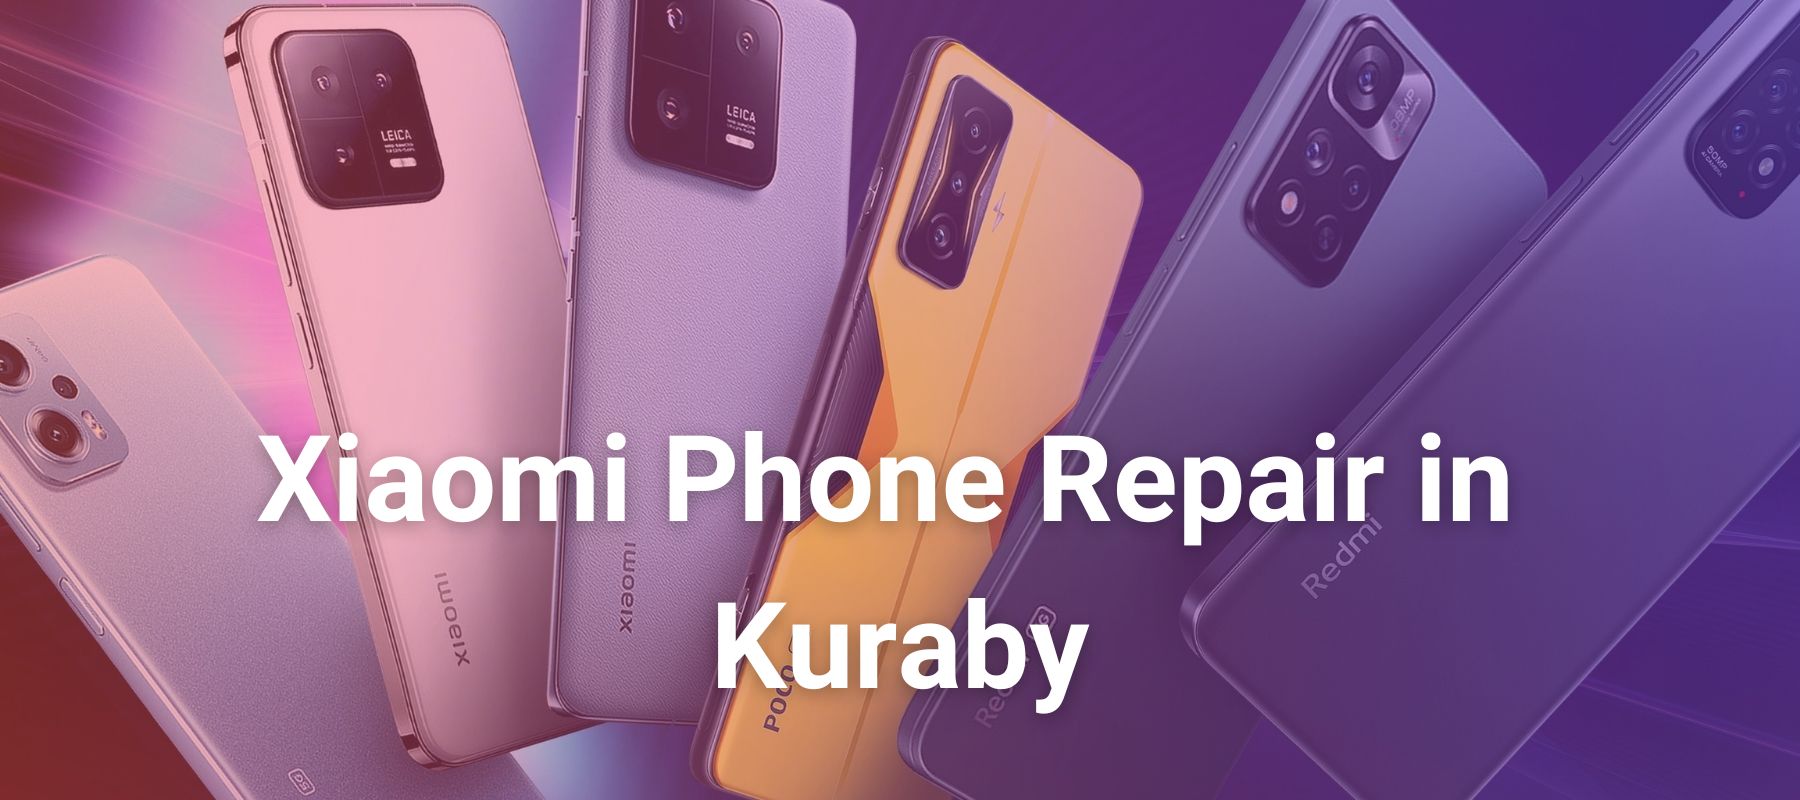 Xiaomi Phone Repair in Kuraby